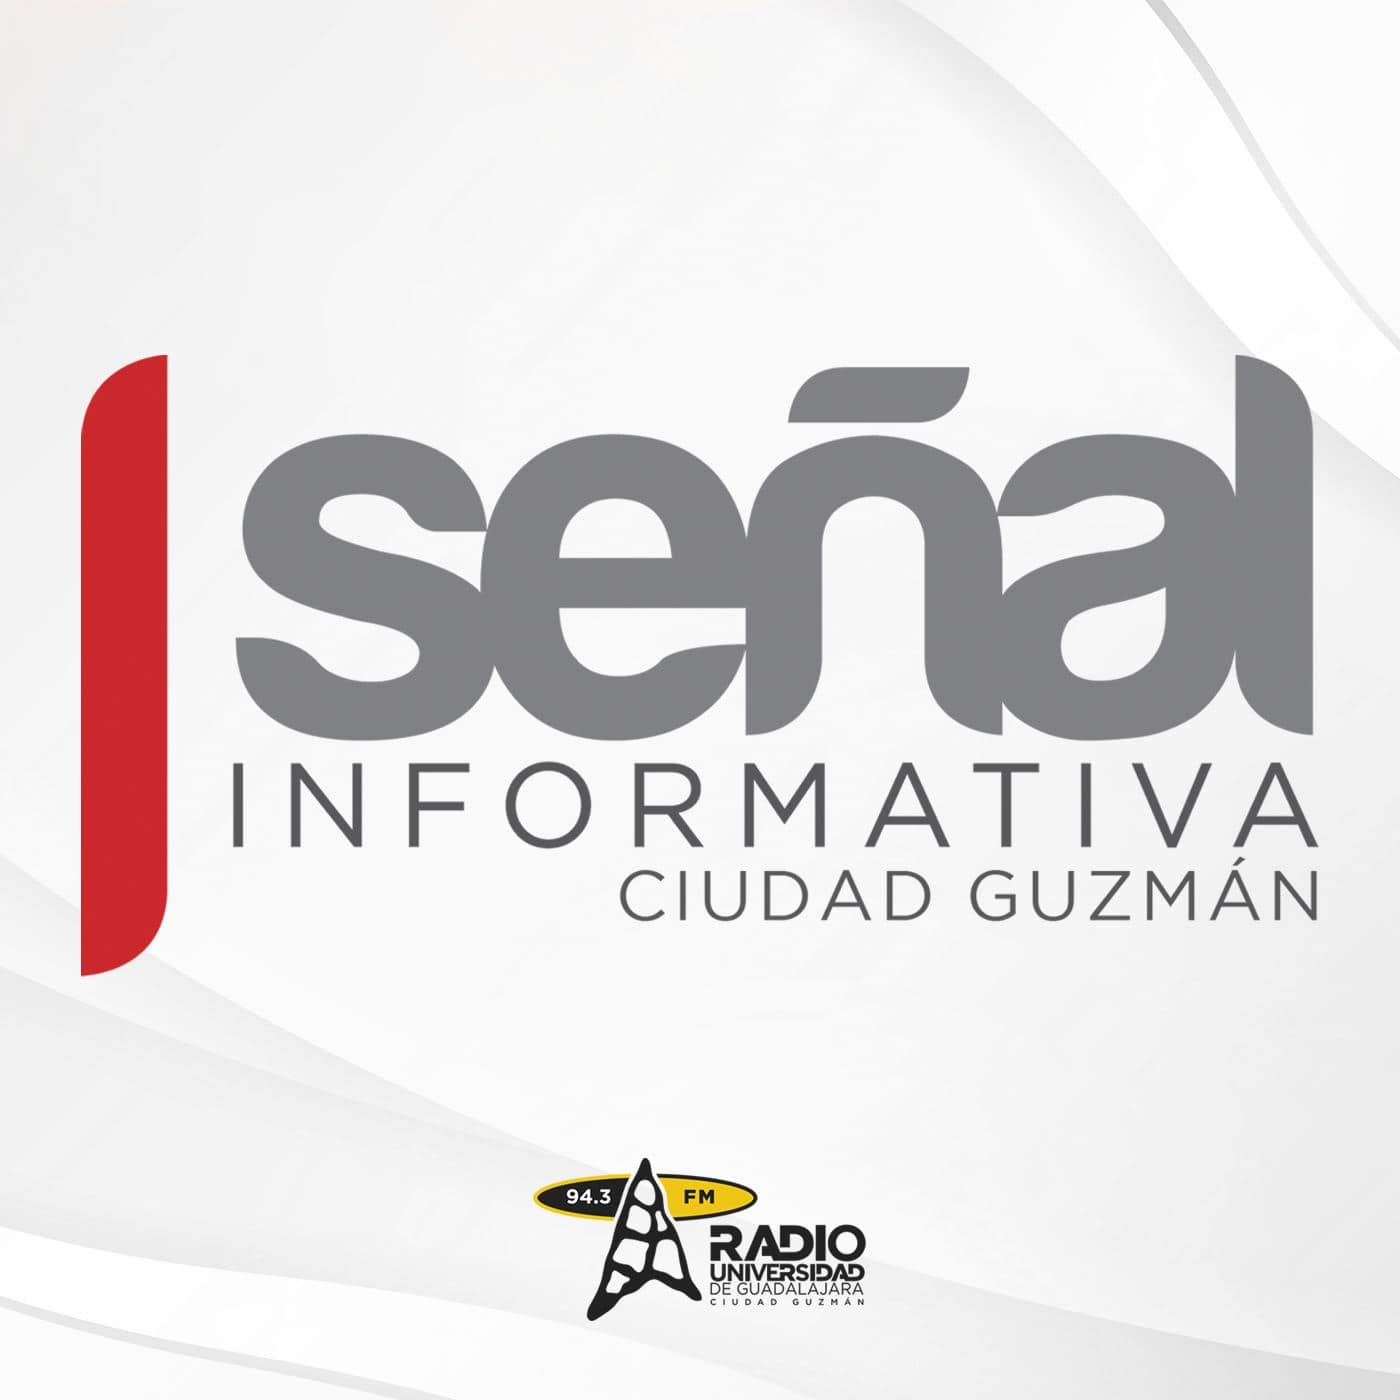 Señal Informativa Ciudad Guzmán, 13 de noviembre